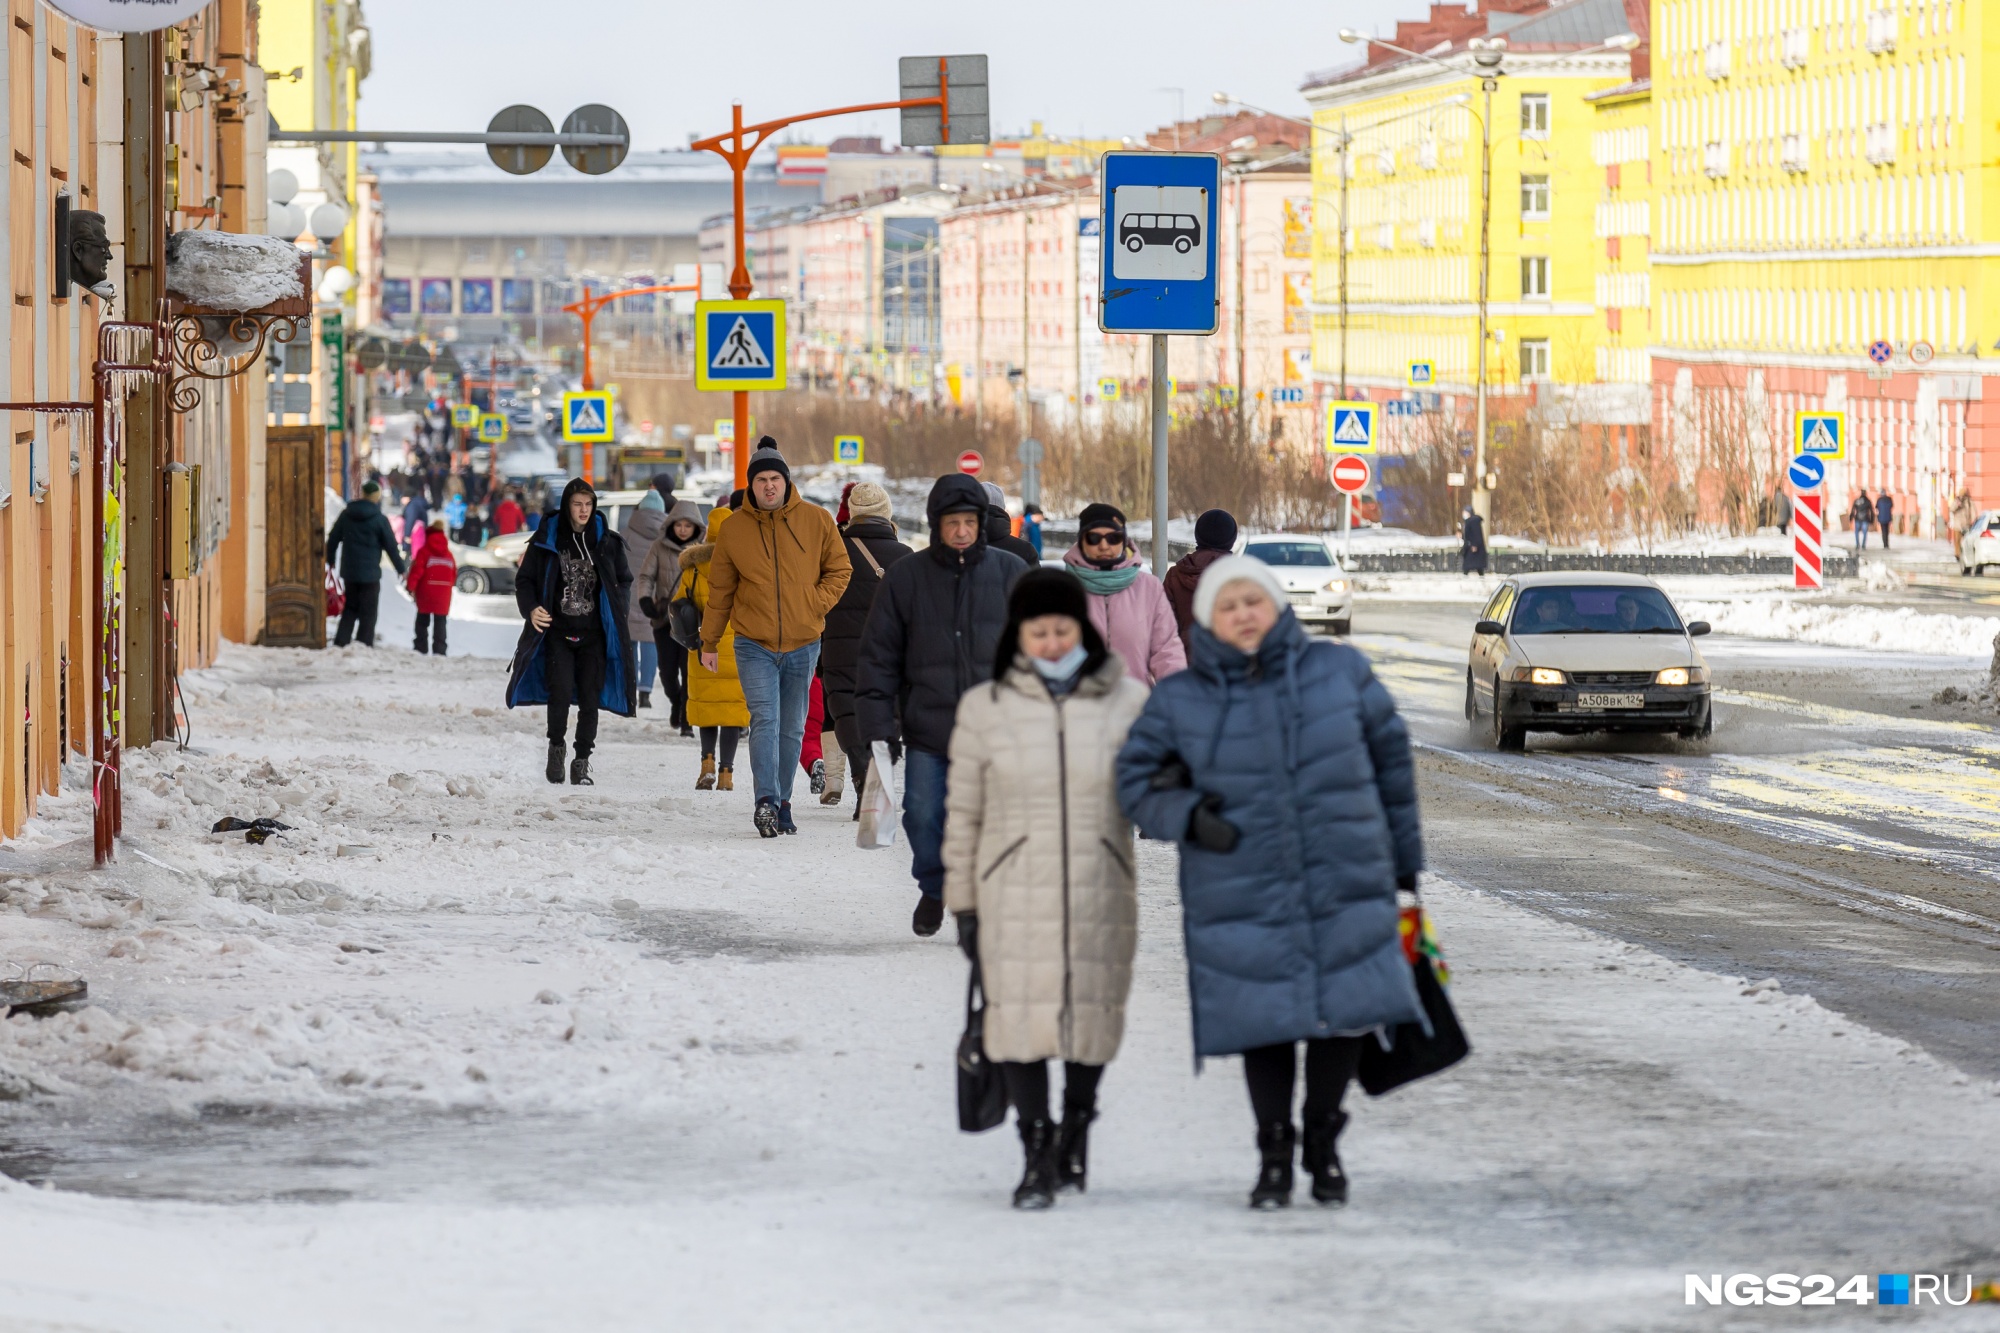 Норильск сегодня по условиям жизни много уступает даже Красноярску, не говоря уж о столицах. А когда-то было совсем иначе